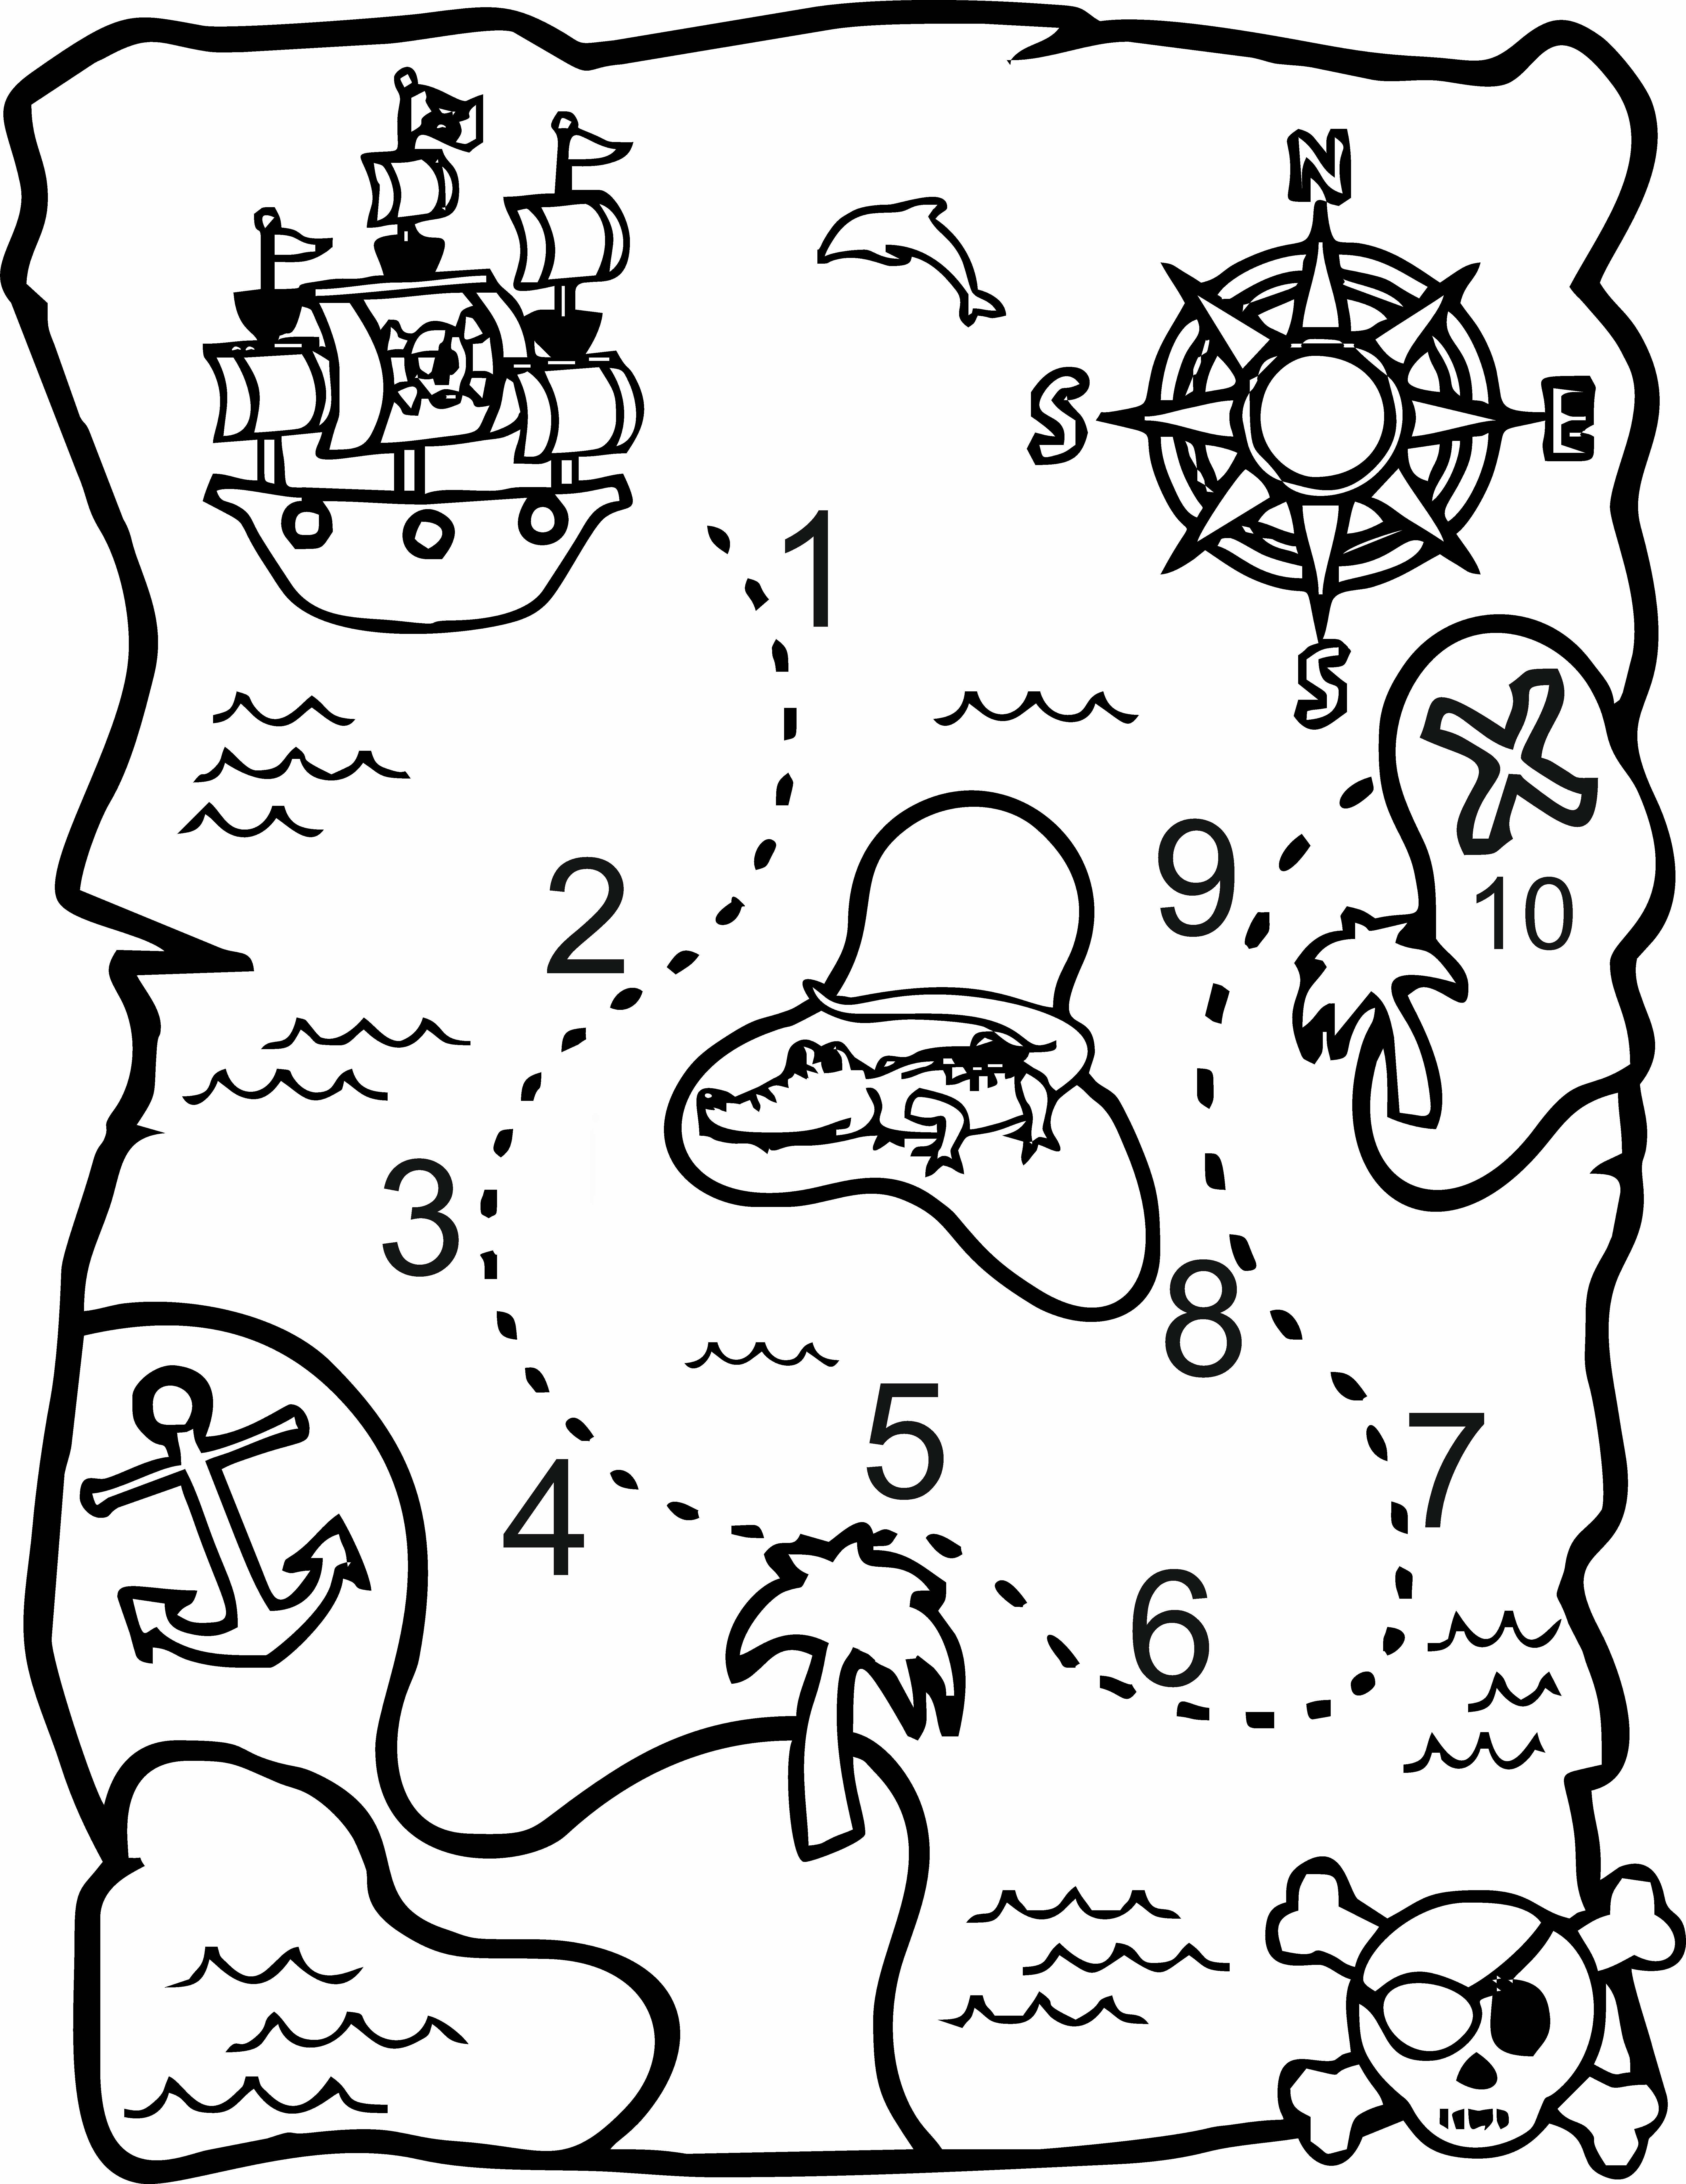 Карта квест для ребенка. Остров сокровищ карта задания пирата. Пиратский квест карта сокровищ для детей. Раскраска карта сокровищ для детей. Карта пиратов для детей.